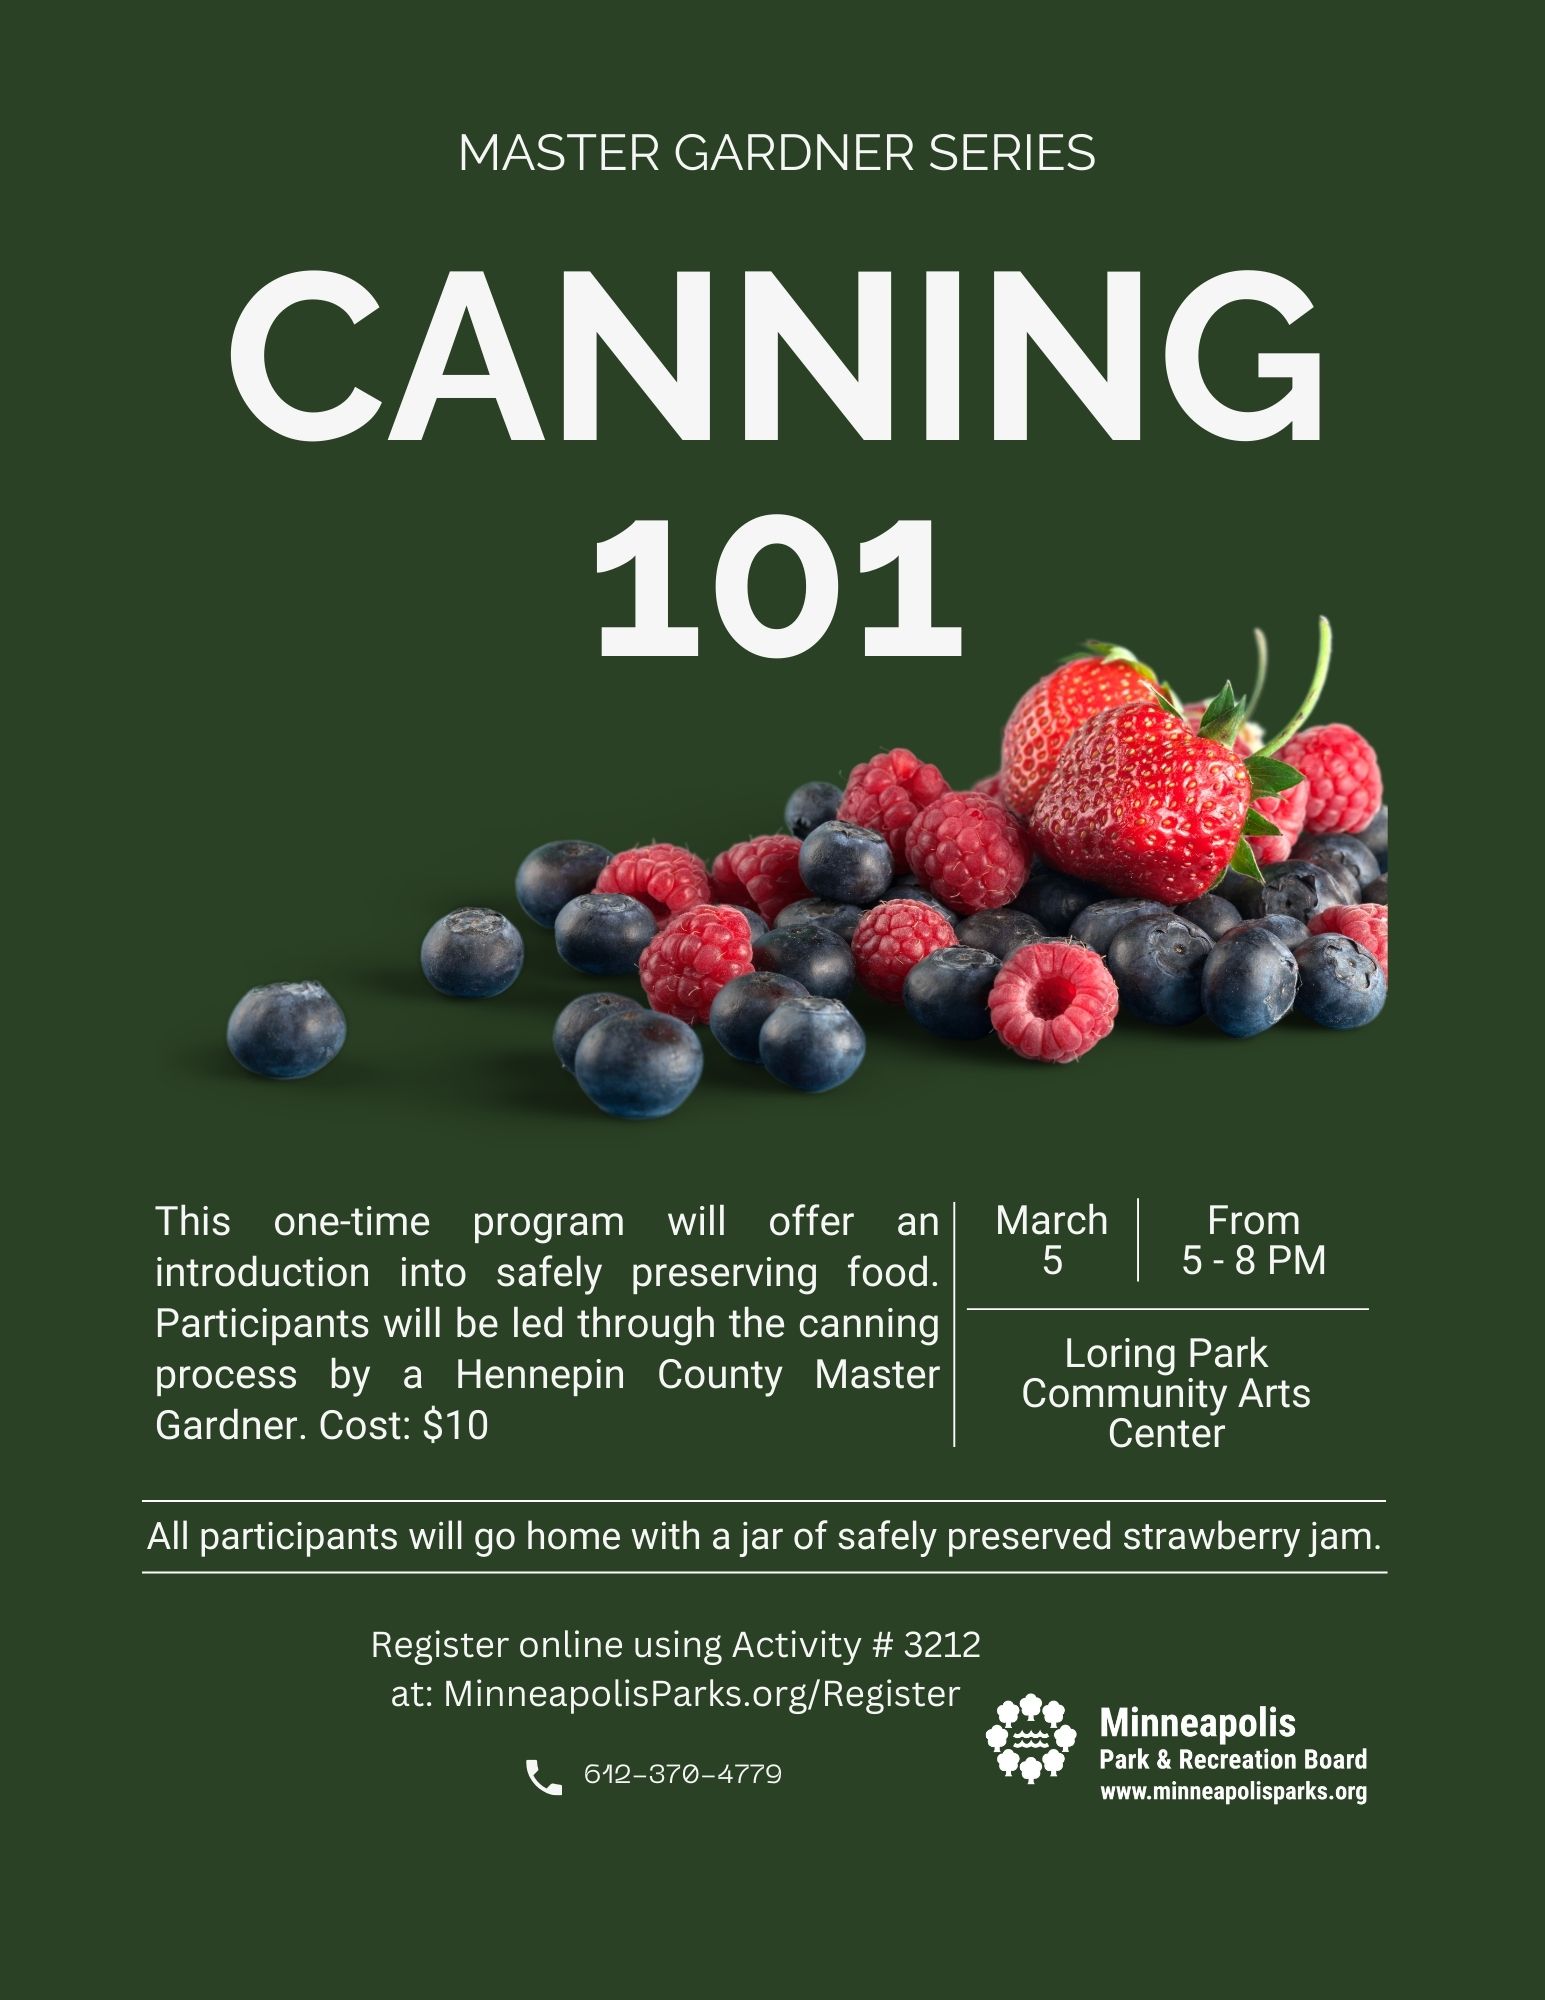 Canning 101 at Loring Park